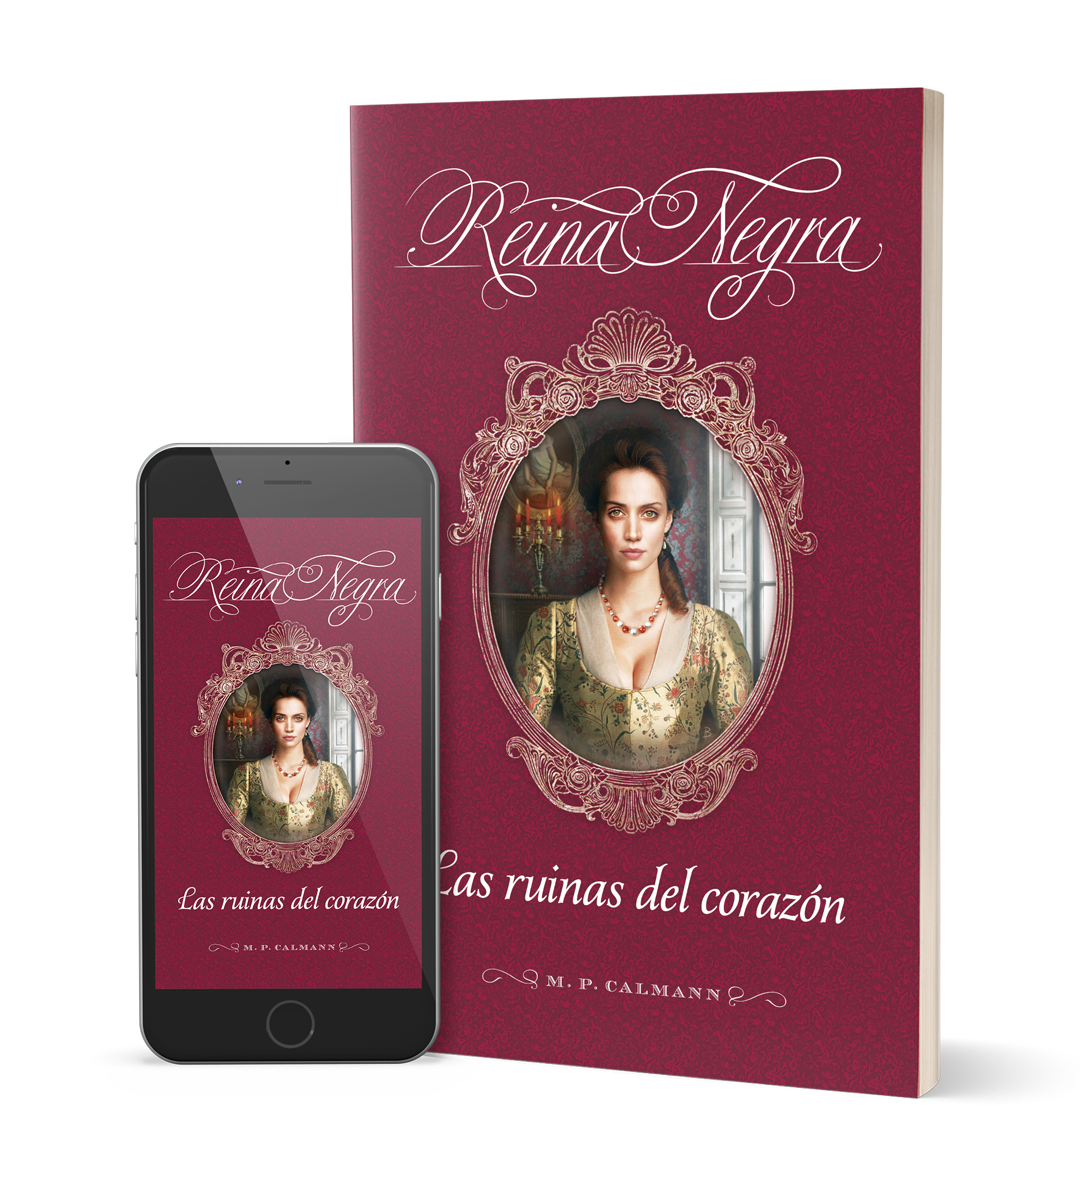 Las ruinas del corazón - Primera novela de la saga de novelas románticas históricas "Reina Negra"